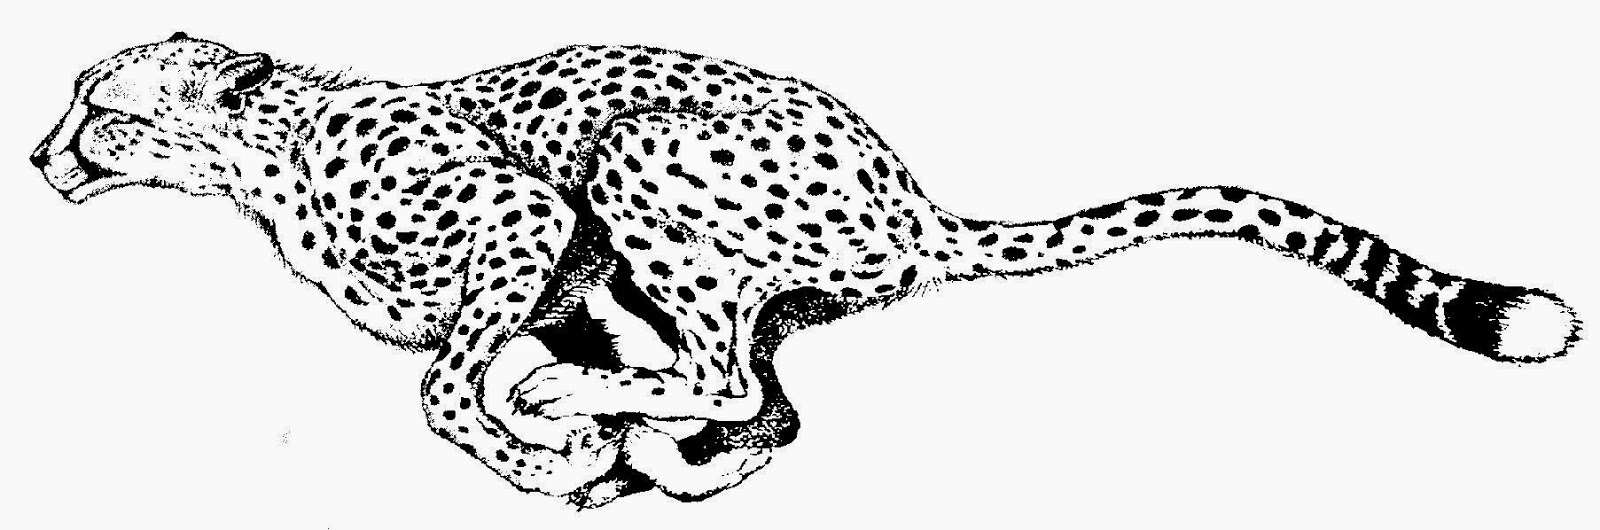 Cheetah print black and white - Clipart Cheetah